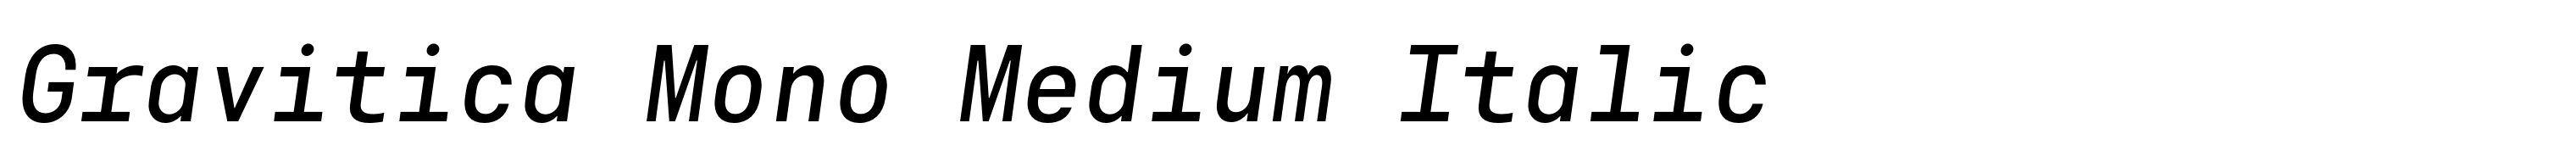 Gravitica Mono Medium Italic